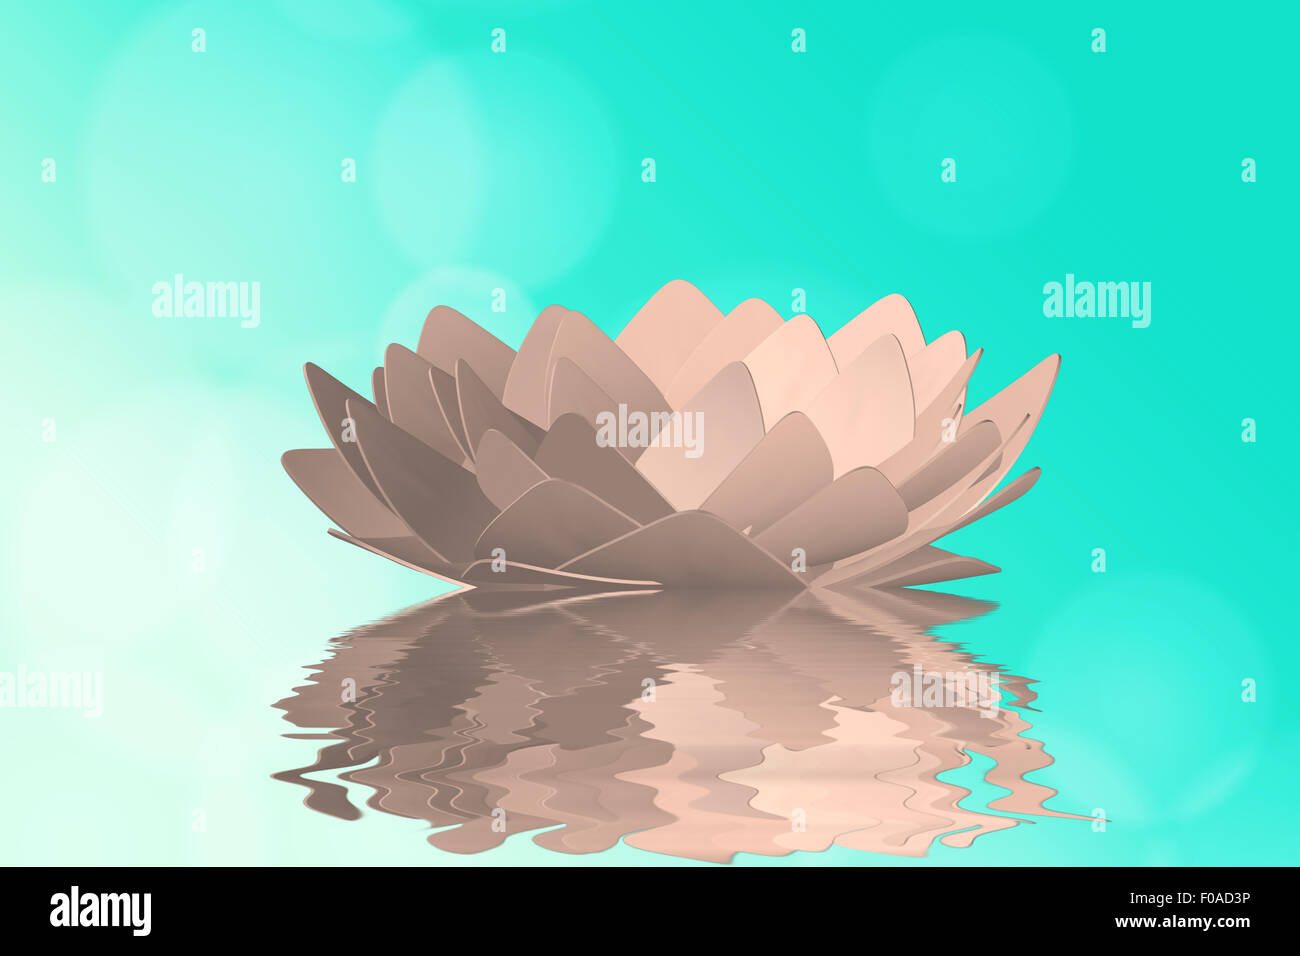 Lotus-Blume im Wasser am blau-grünen Hintergrund Stockfoto